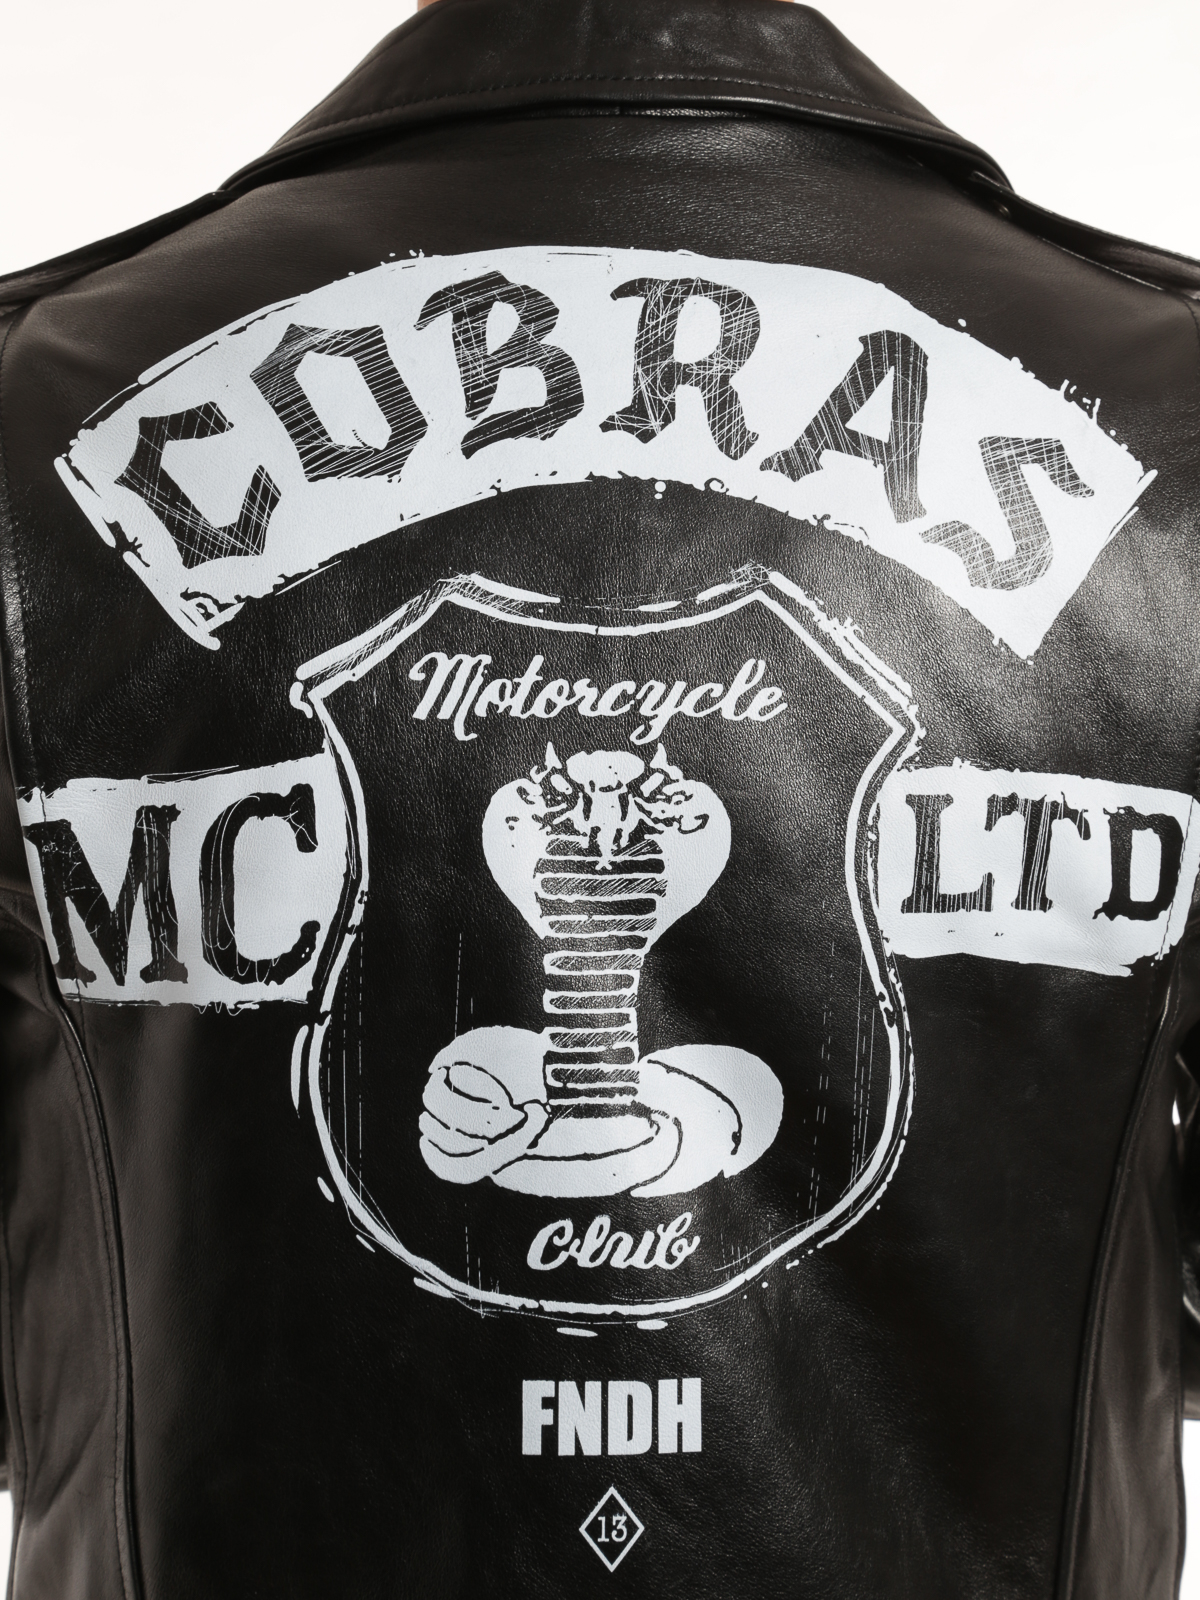 Alexander McQueen Snake-Embossed Leather Biker Jacket